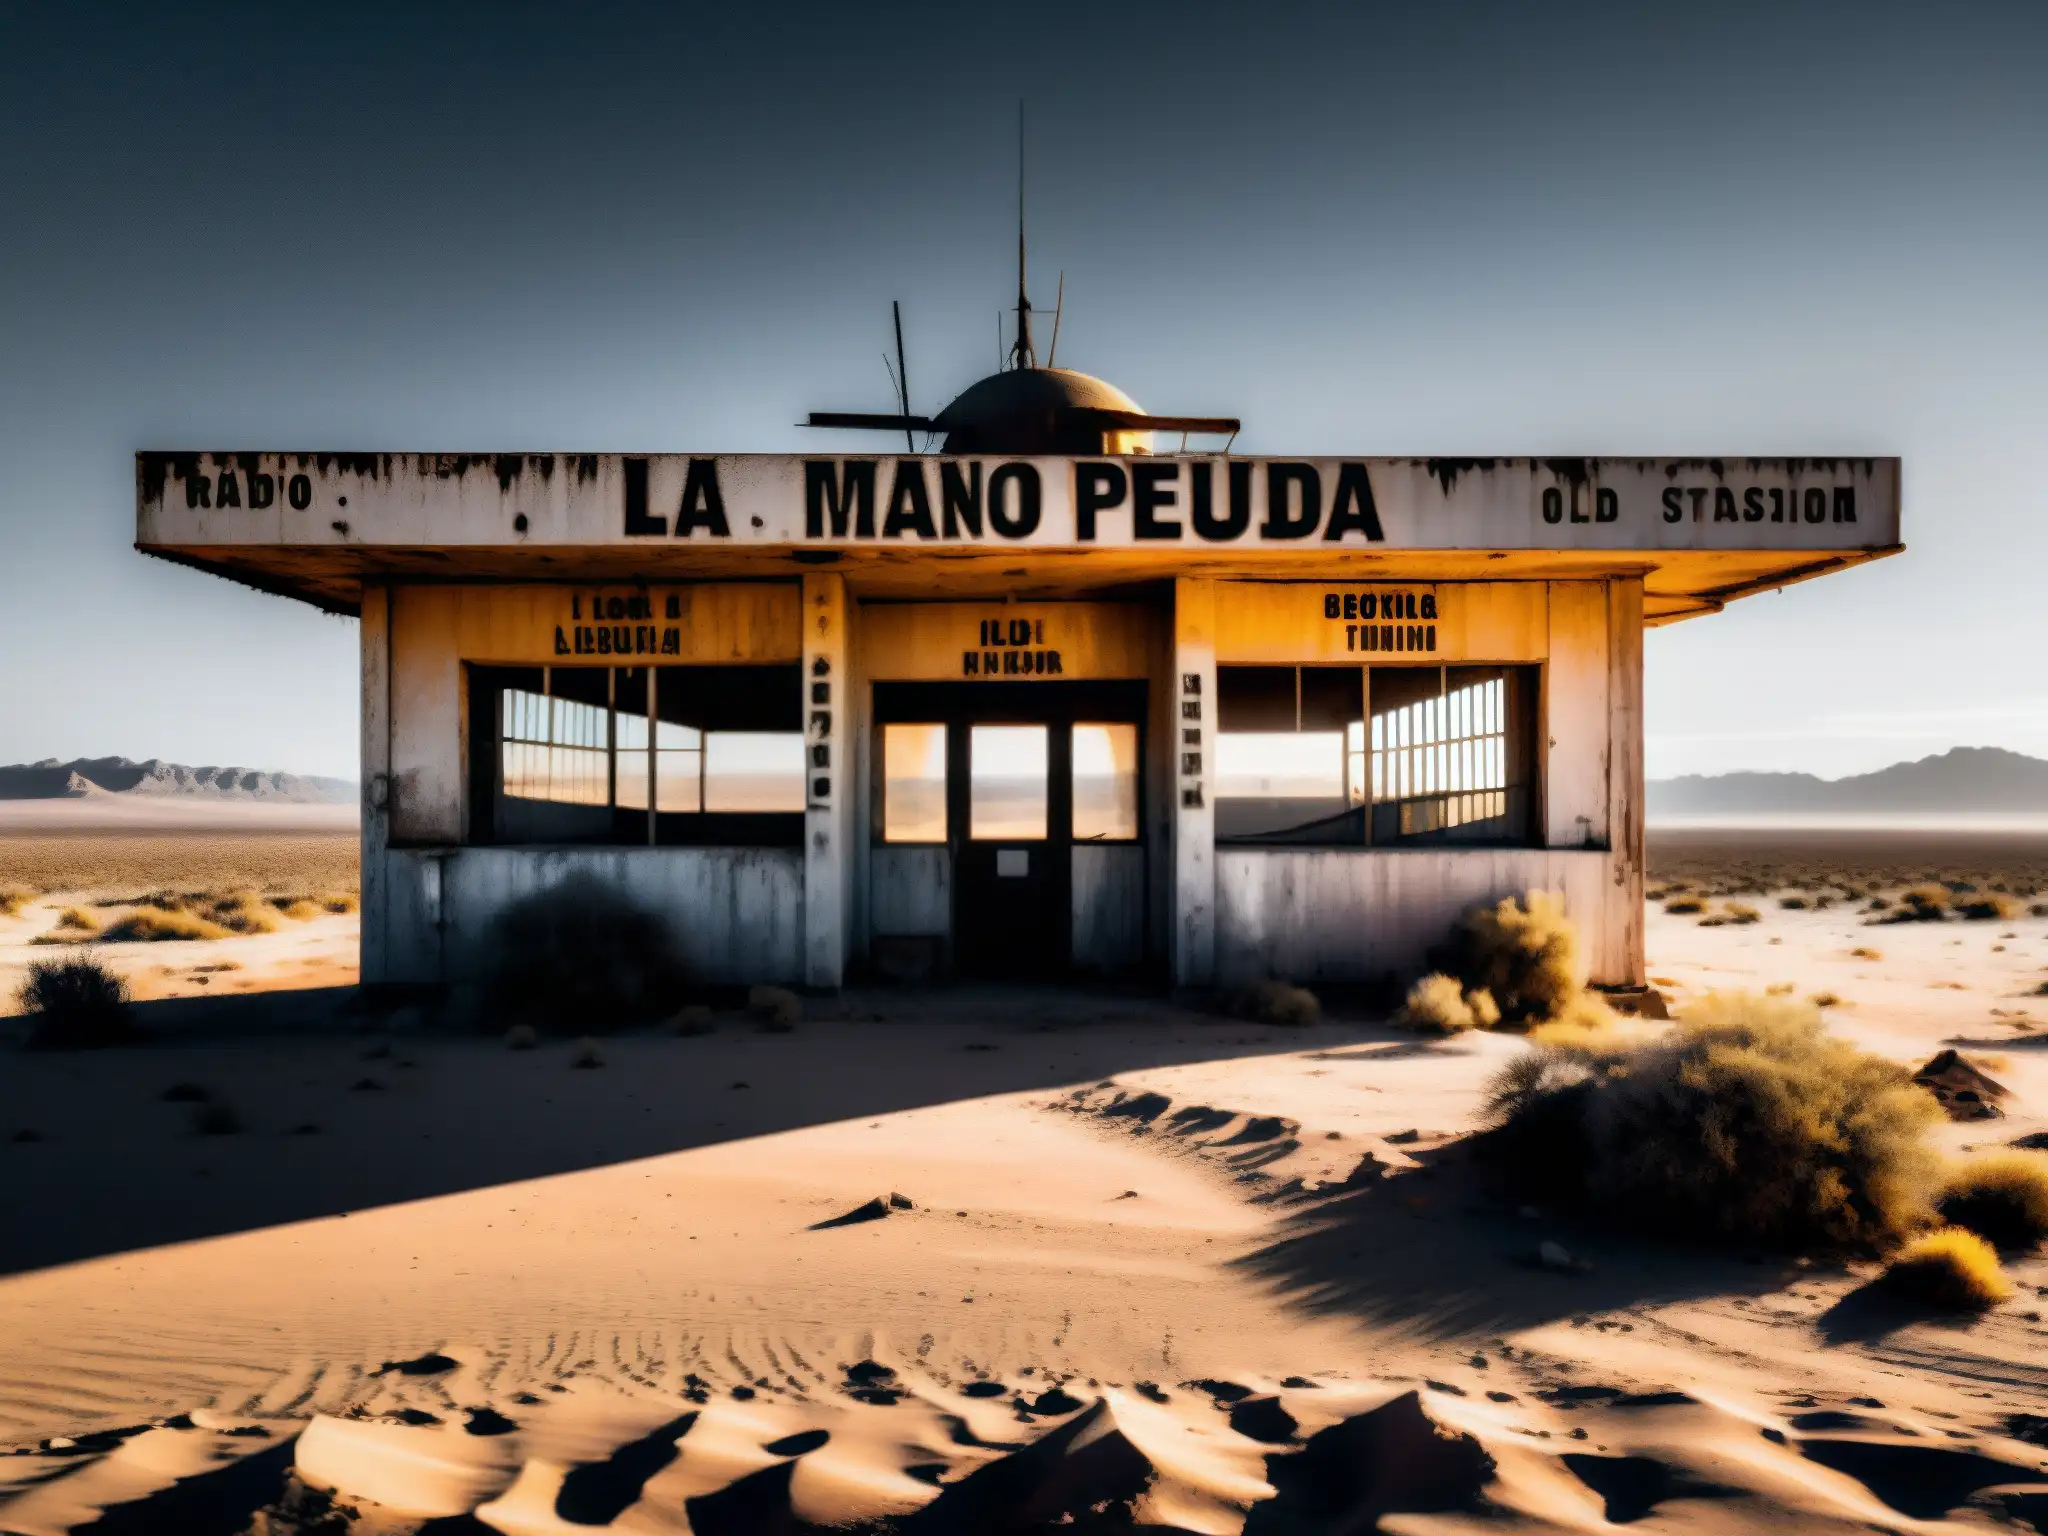 Una estación de radio abandonada en un desierto, cubierta de polvo y misterio